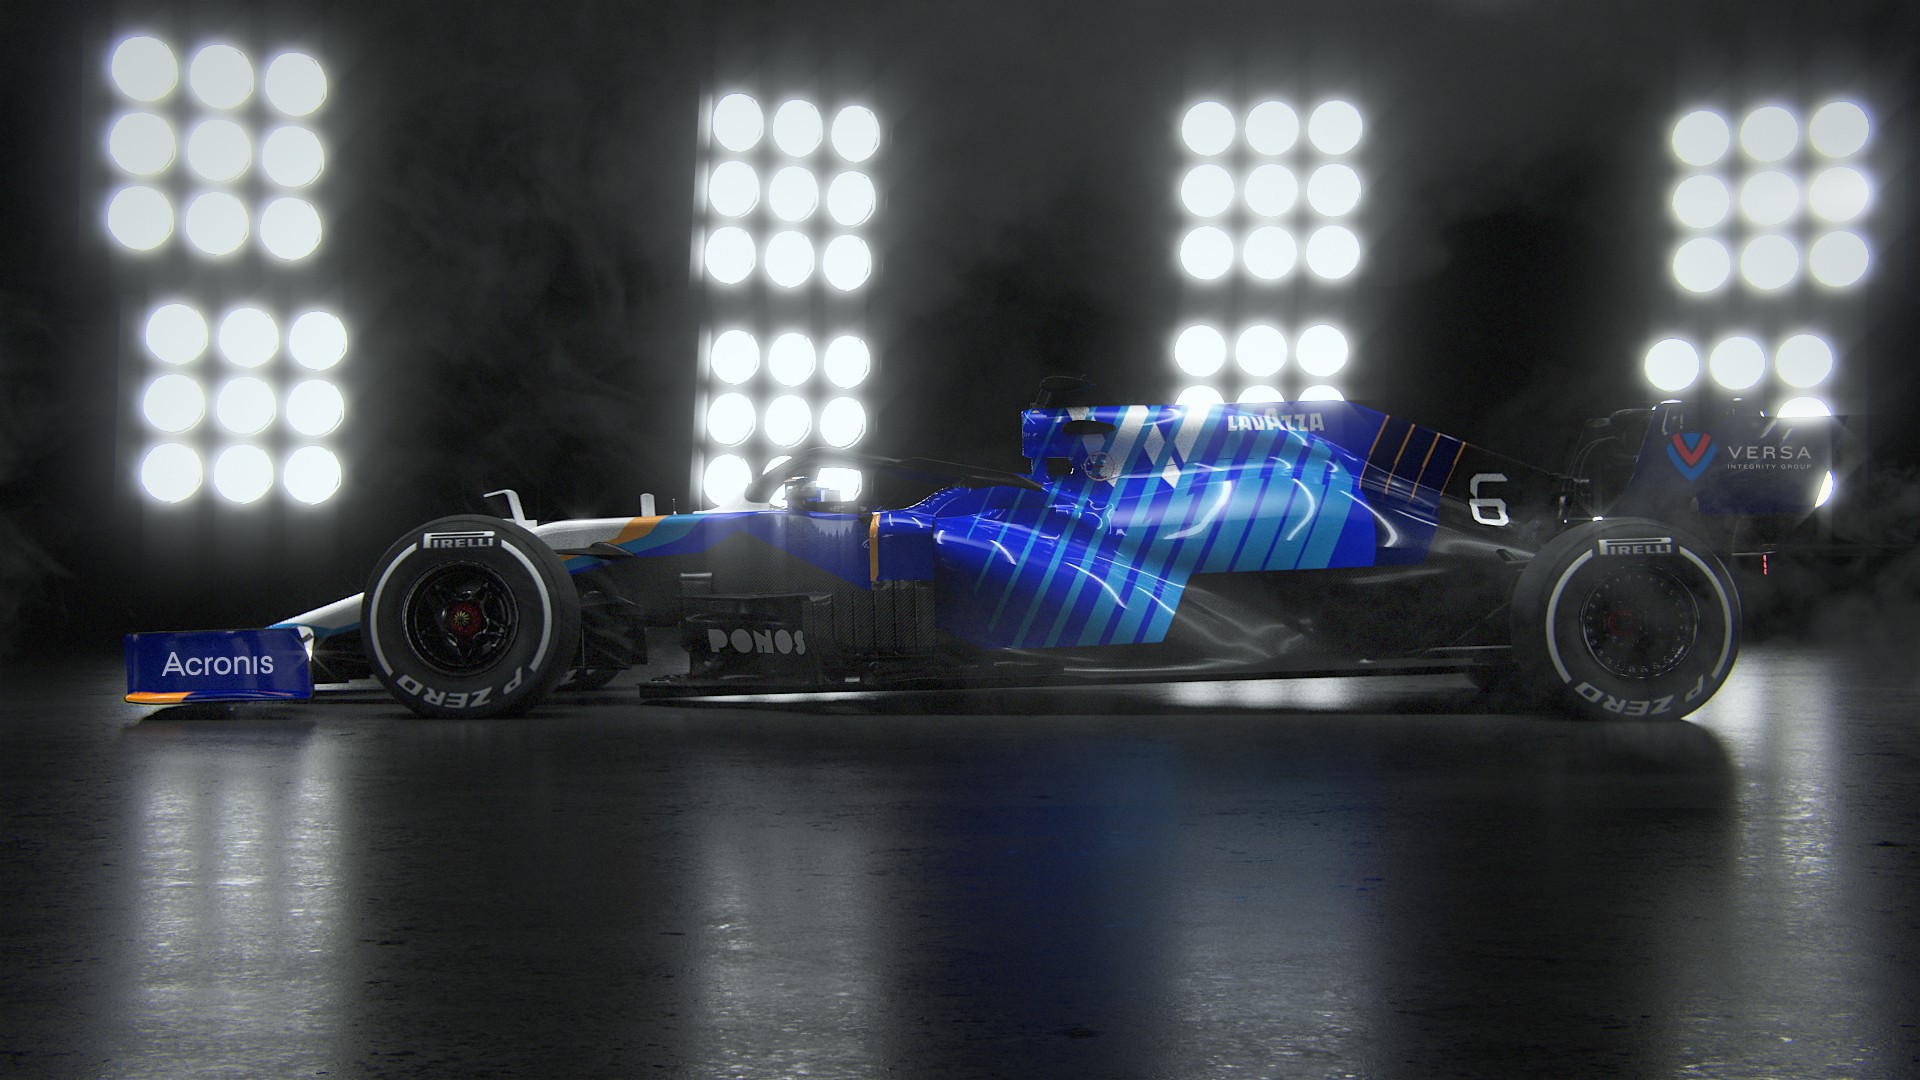 O modelo FW43B, da Williams, foi apresentado para a temporada 2021 de Fórmula 1 - Divulgação/Williams